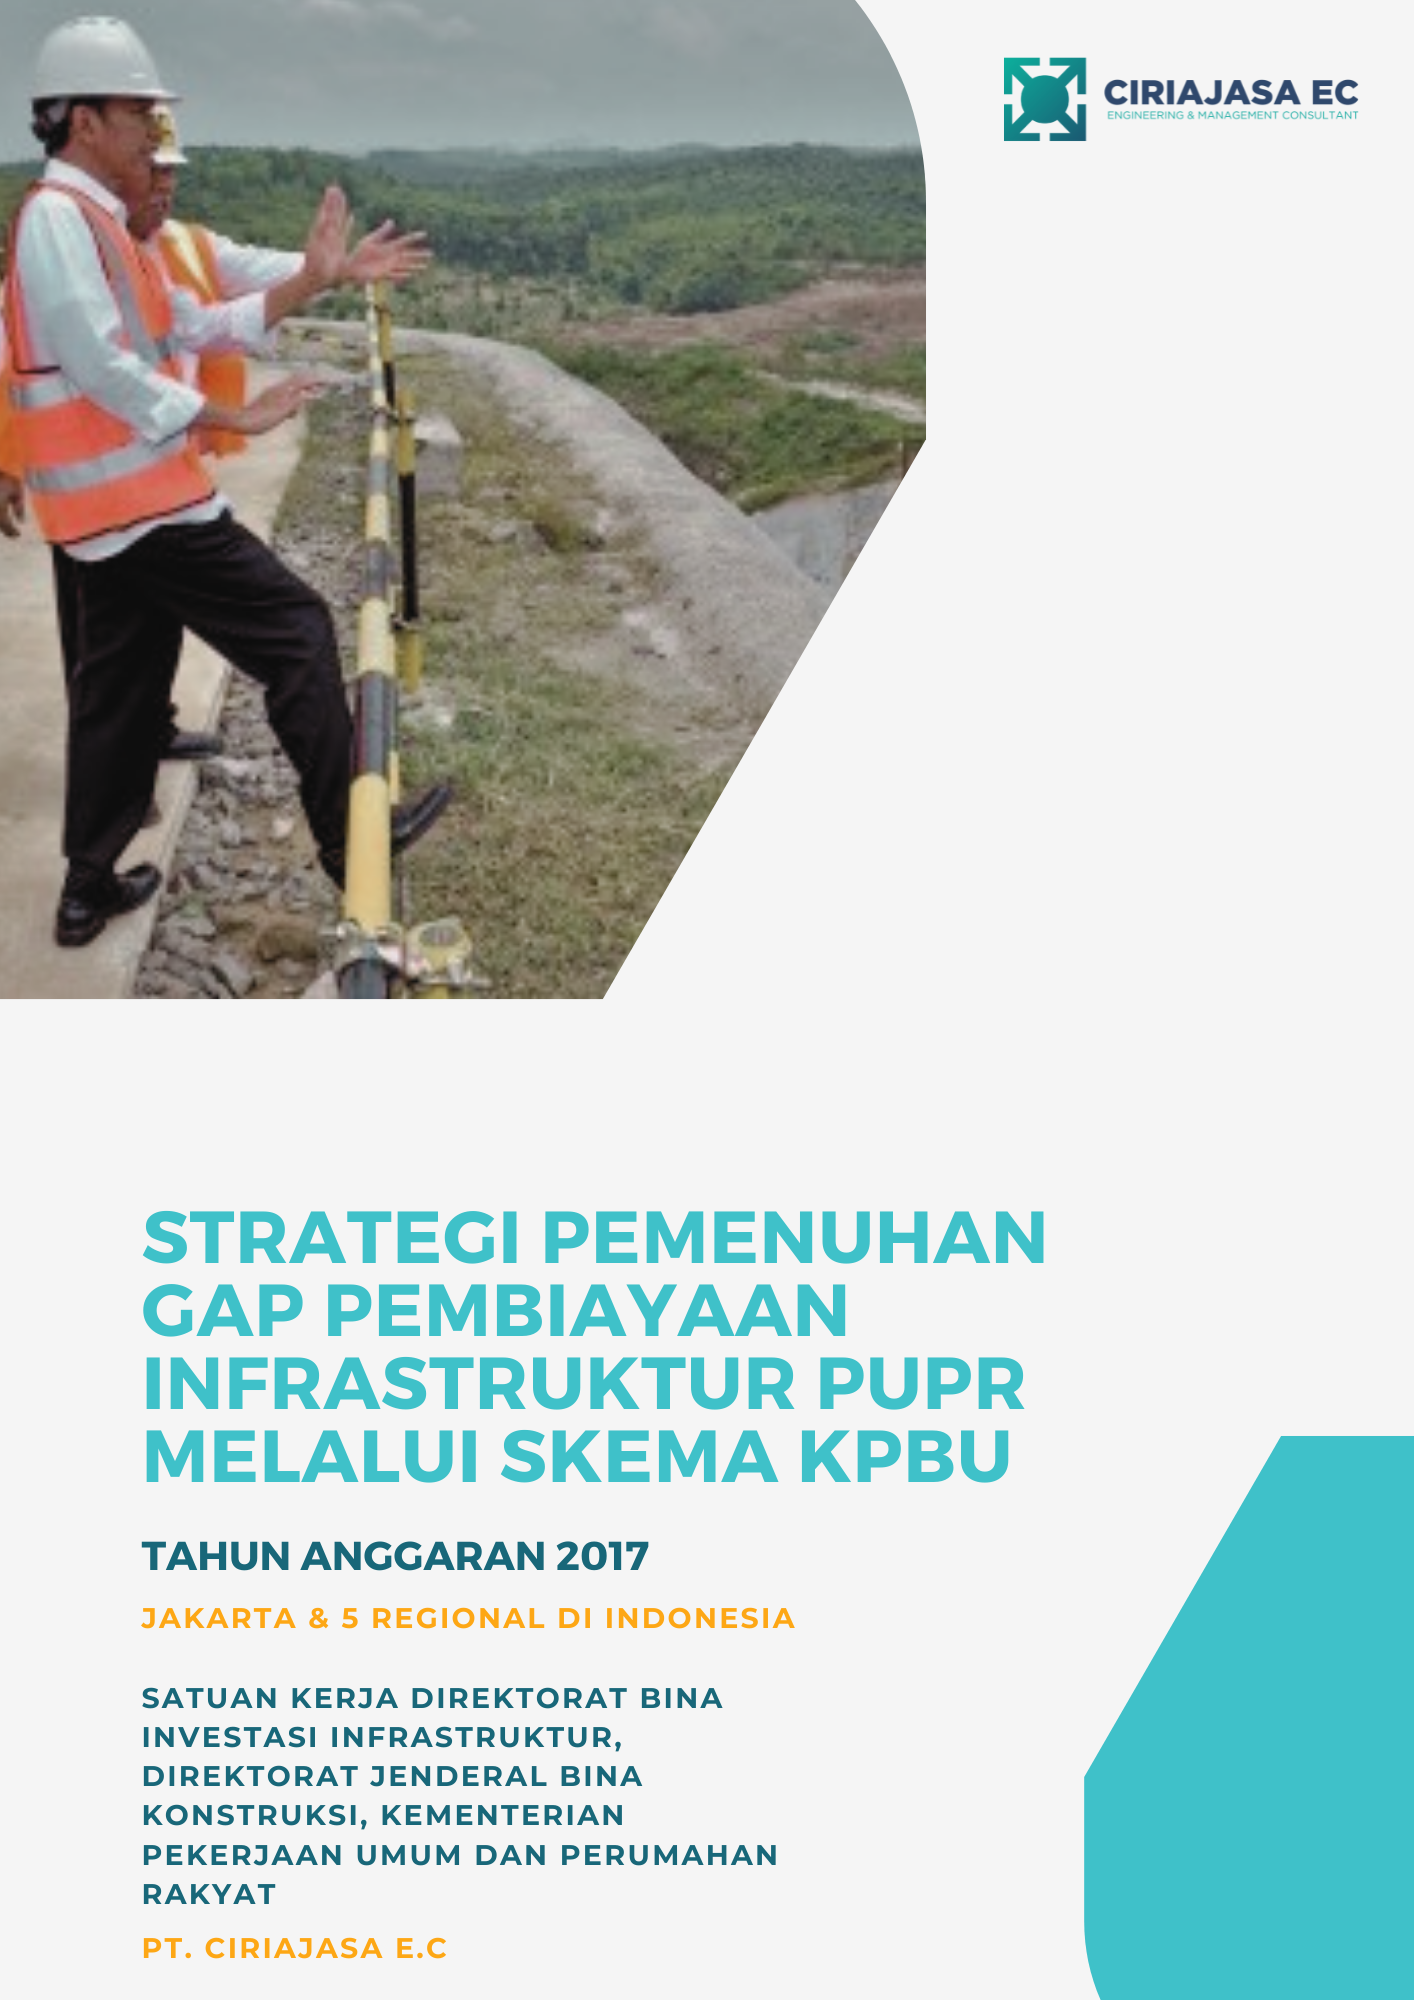 image-Strategi Pemenuhan Gap Pembiayaan Infrastruktur Pekerjaan Umum dan Perumahan Rakyat (PUPR) Melalui Skema Kerjasama Pemerintah dengan Badan Usaha (KPBU)